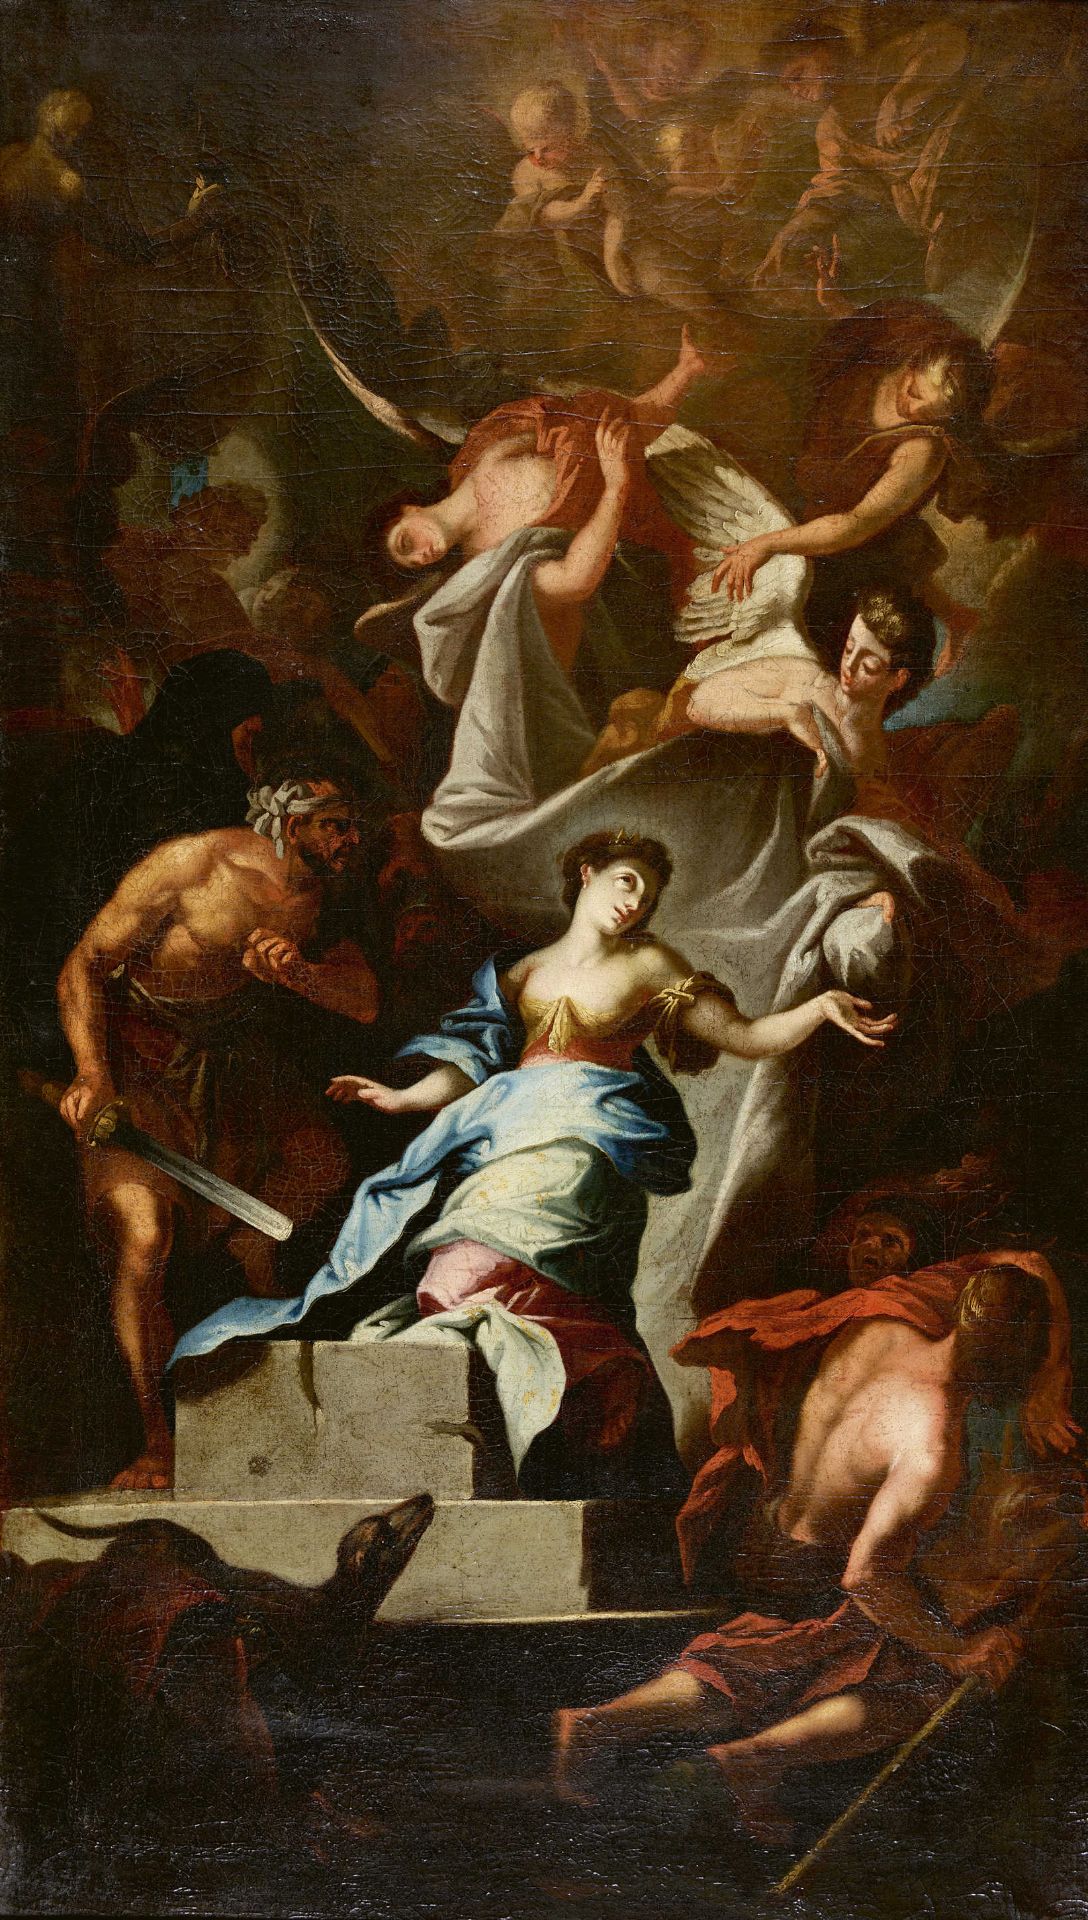 ITALIEN, 17. JH.: Martyrium der Heiligen Katharina von Alexandrien.